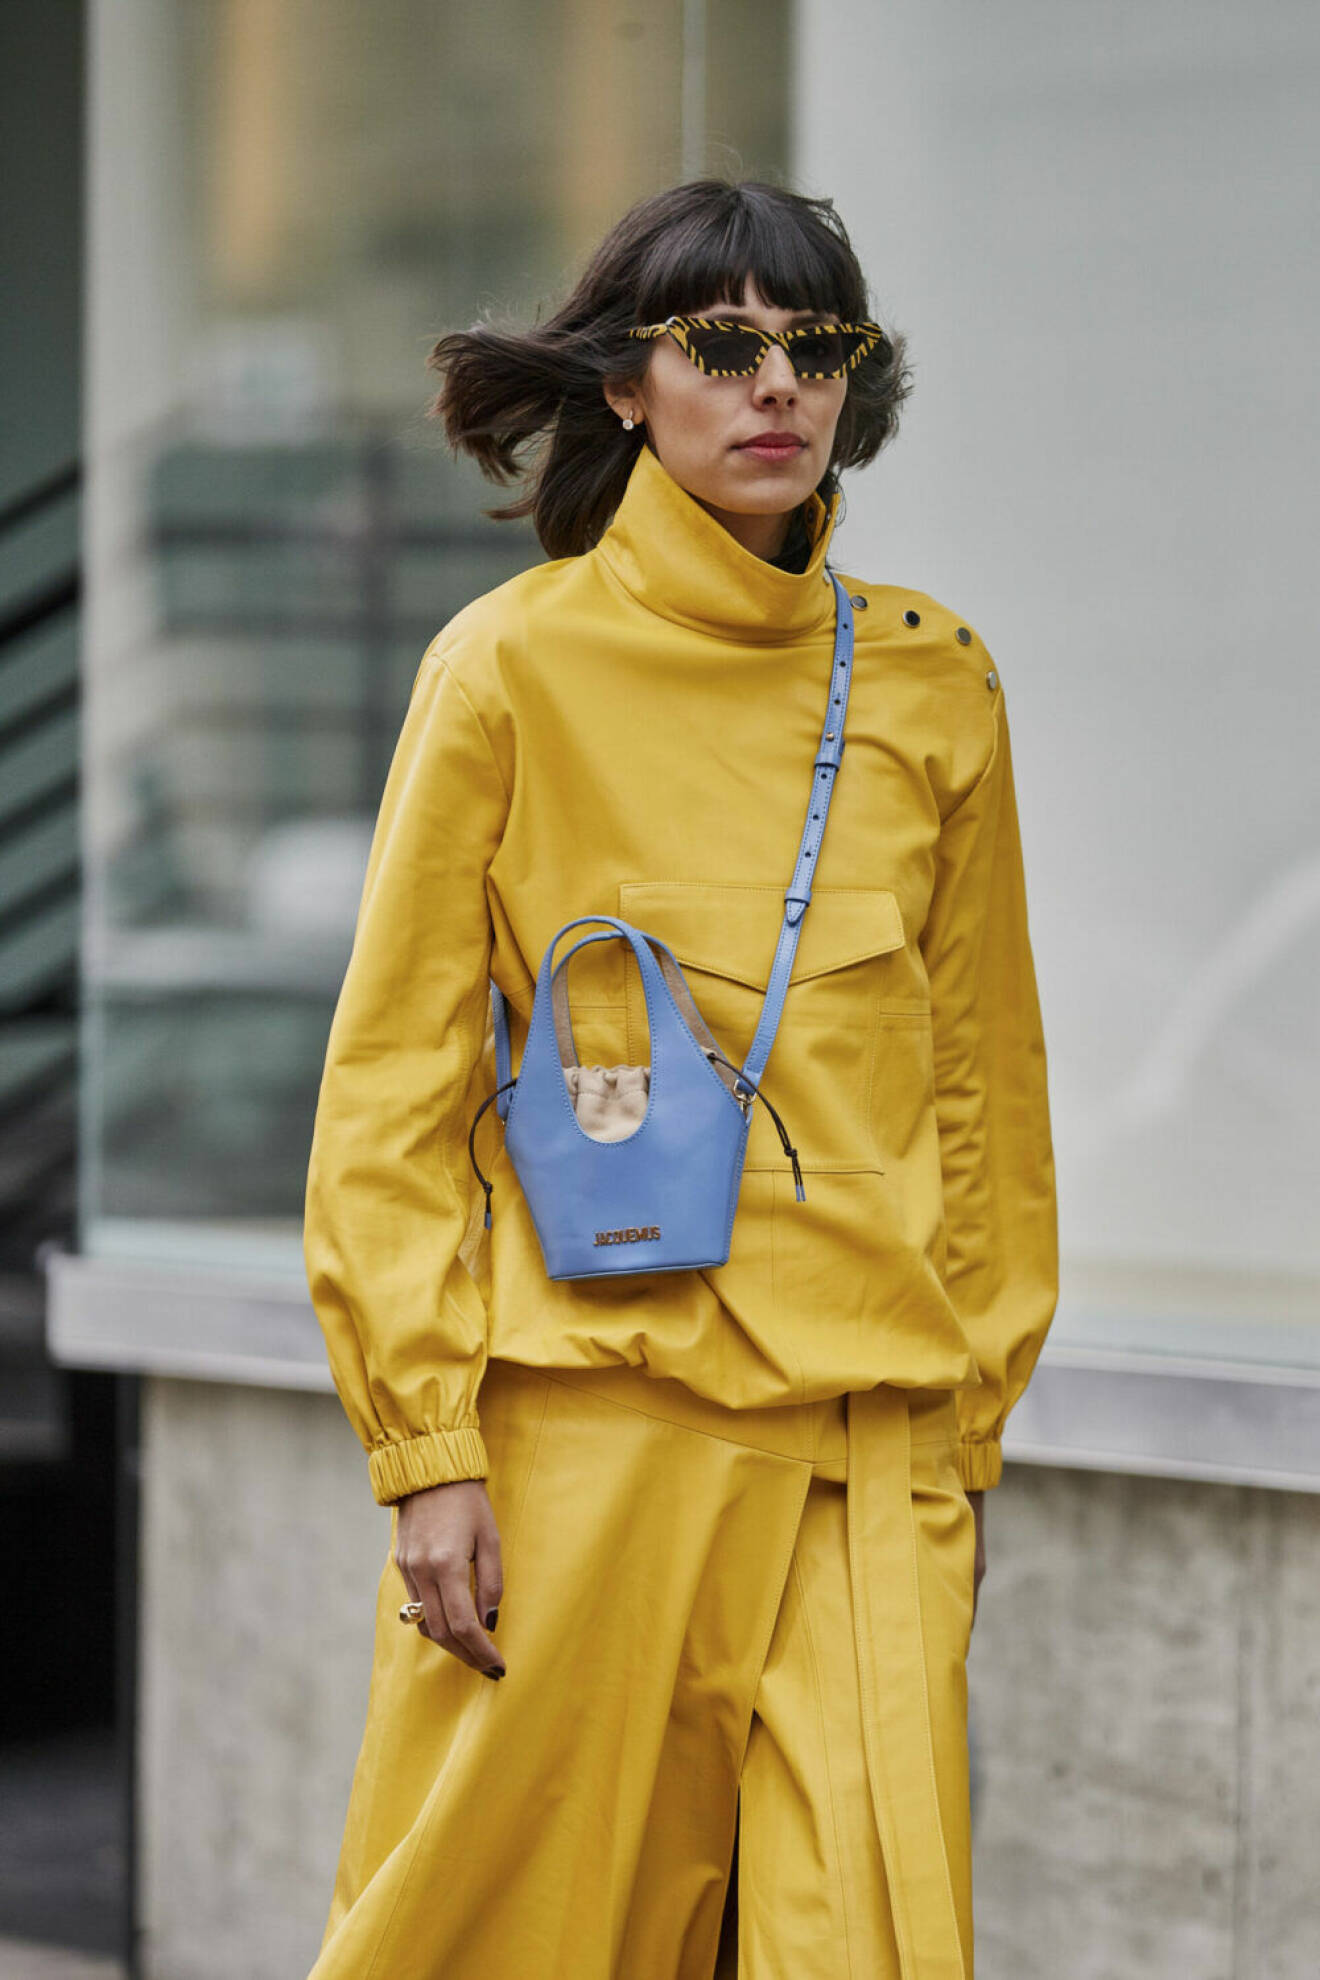 Streetstyle NYFW, outfit i gul med blå miniväska.